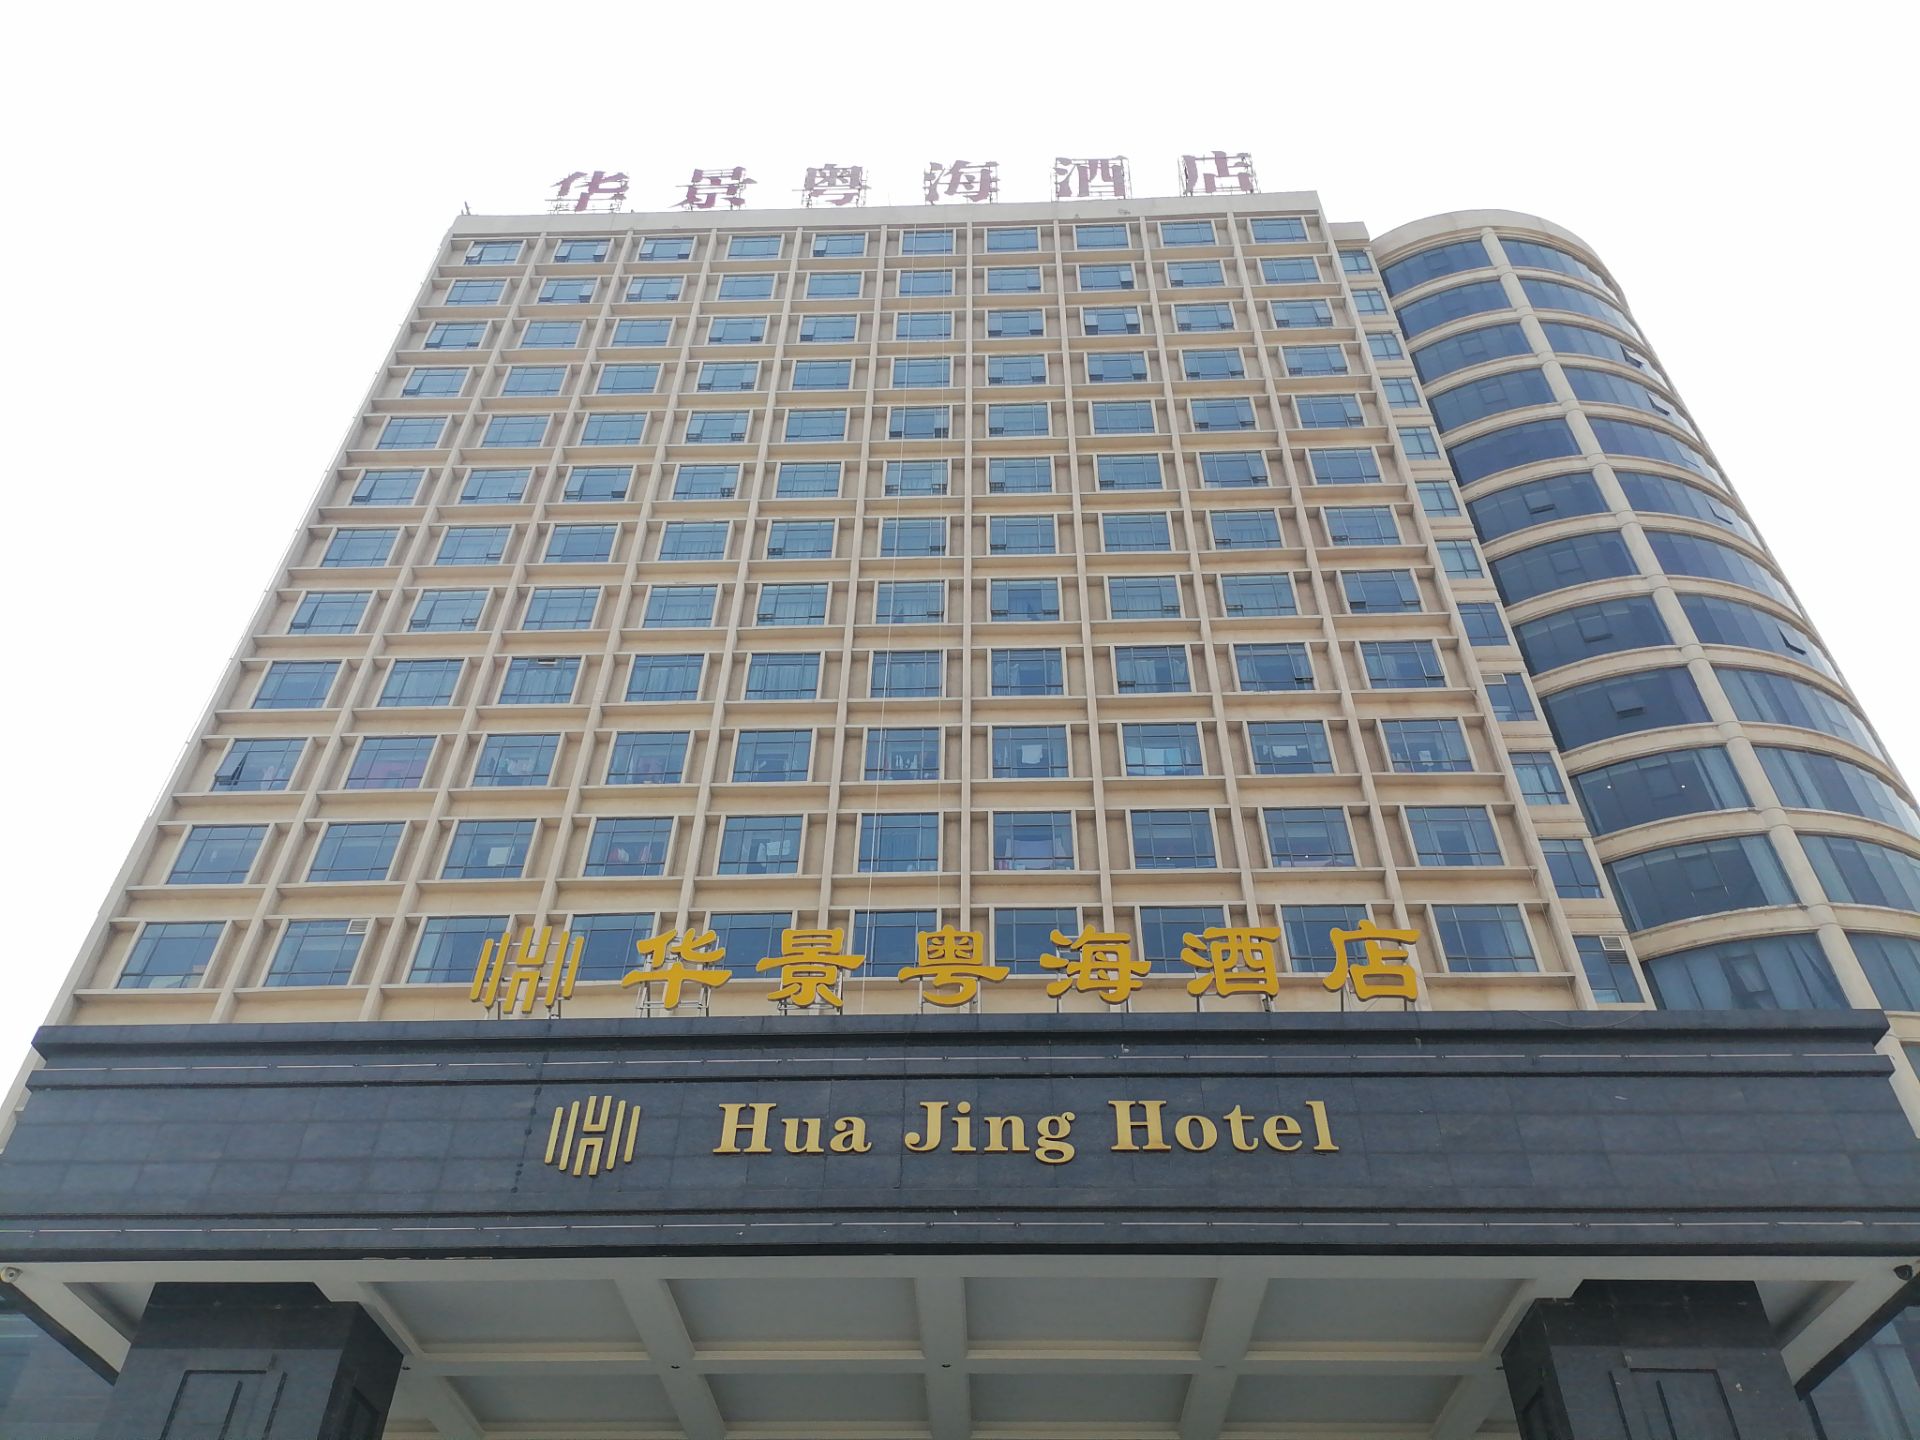 华景粤海酒店是我们县城最大最好的酒店，不担卫生好，服务好，态度好，环境好，哪哪都好，客房住着很舒服，